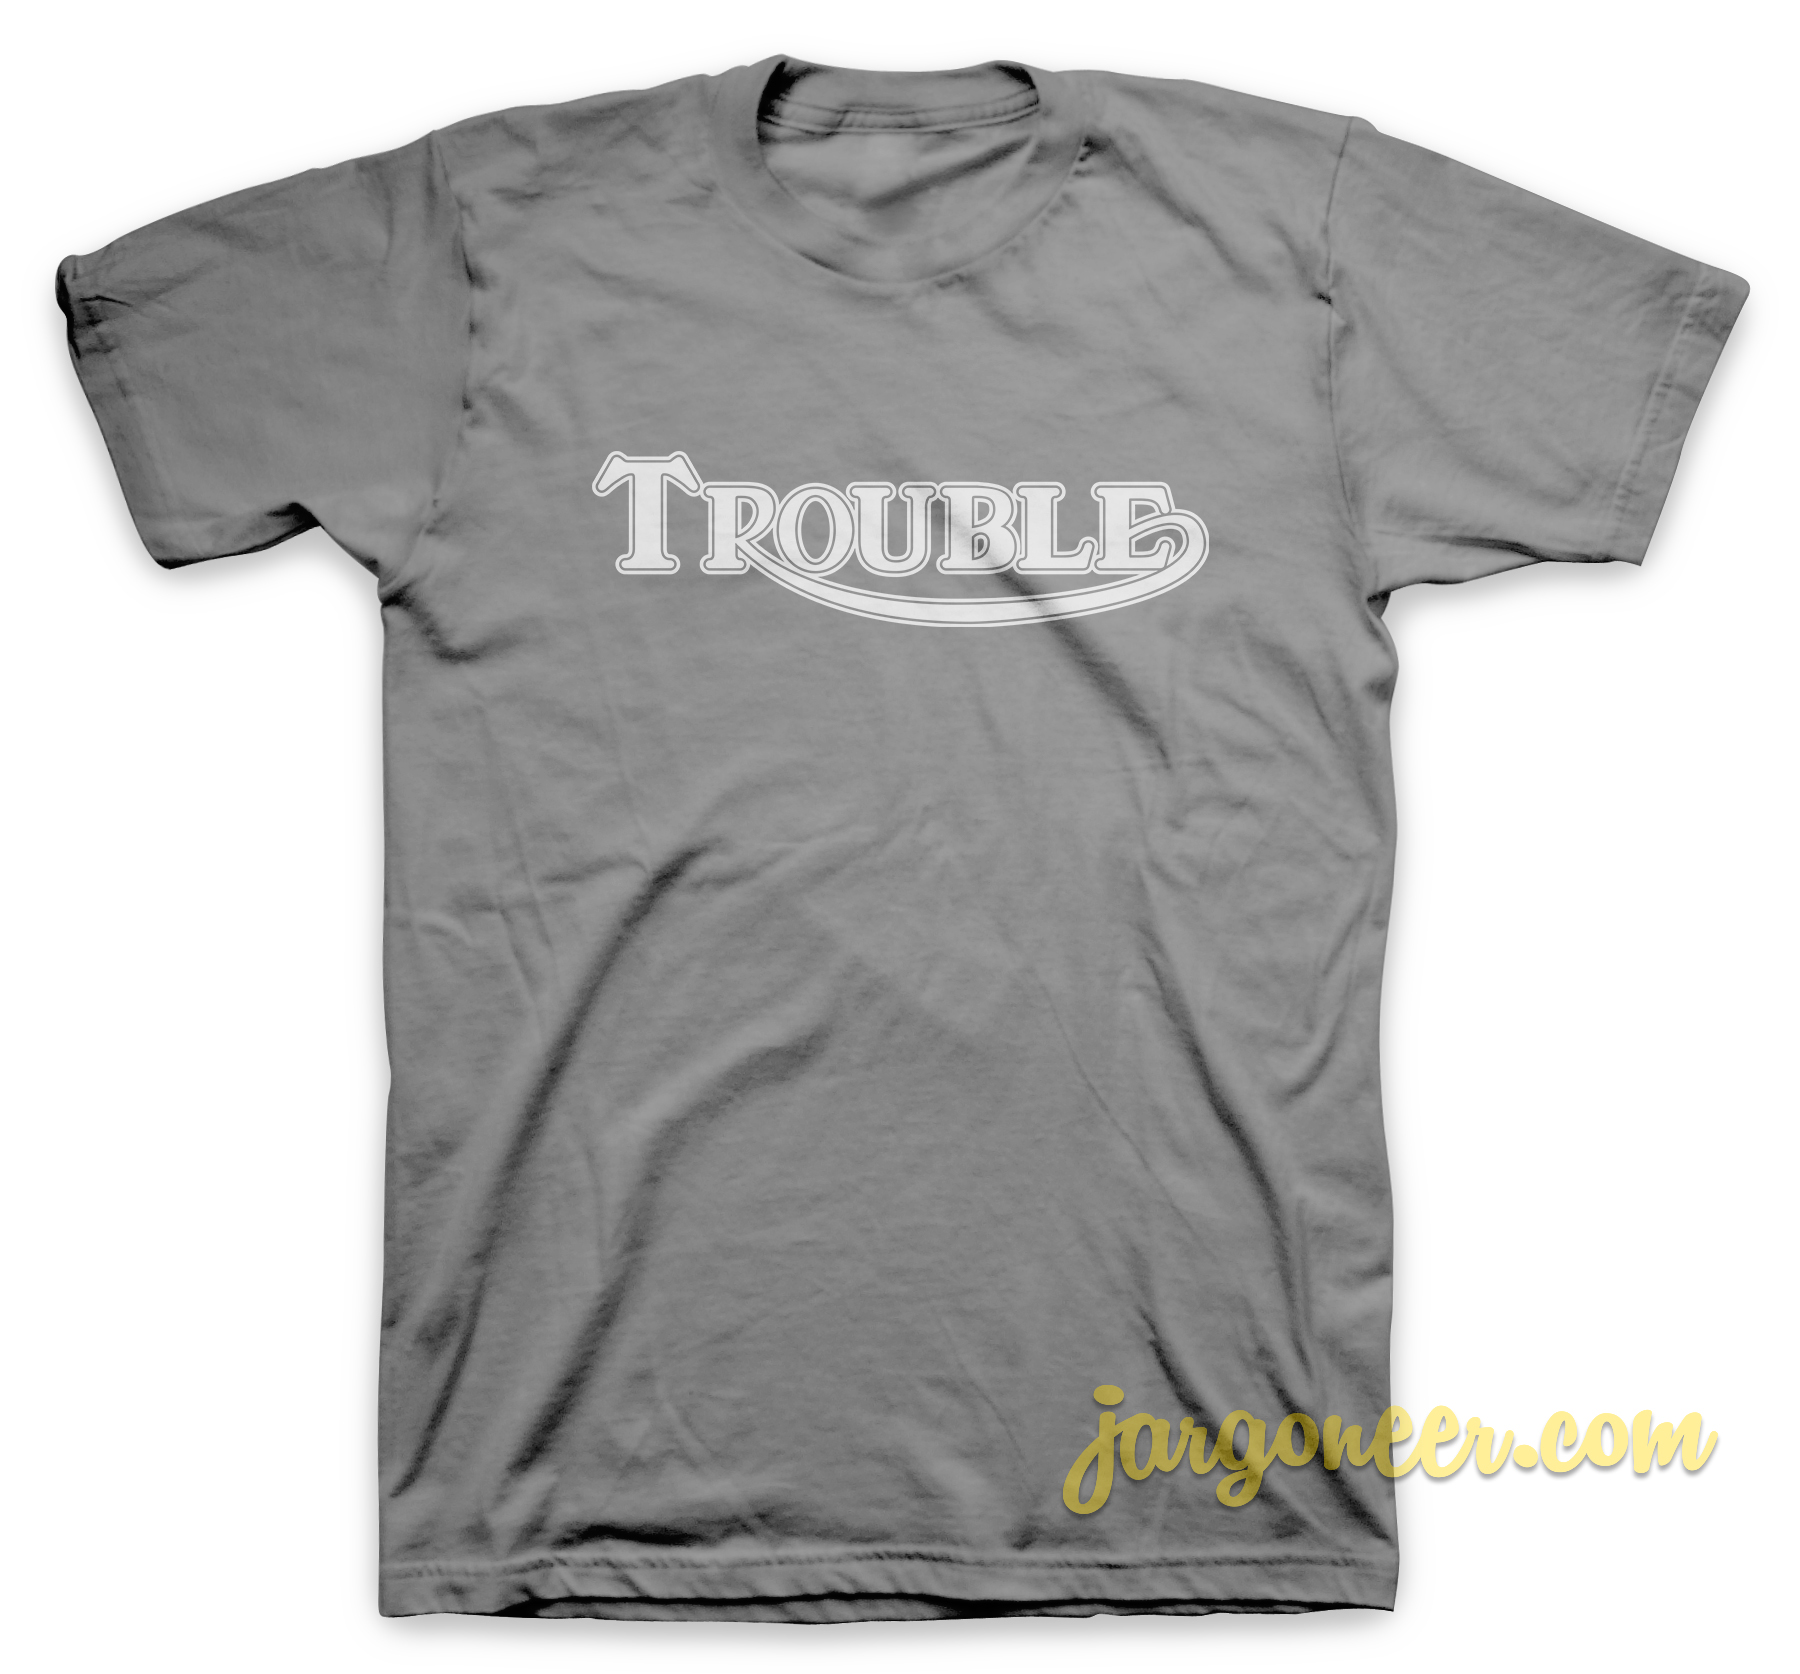 Solid Trouble Gray T Shirt - Shop Unique Graphic Cool Shirt Designs